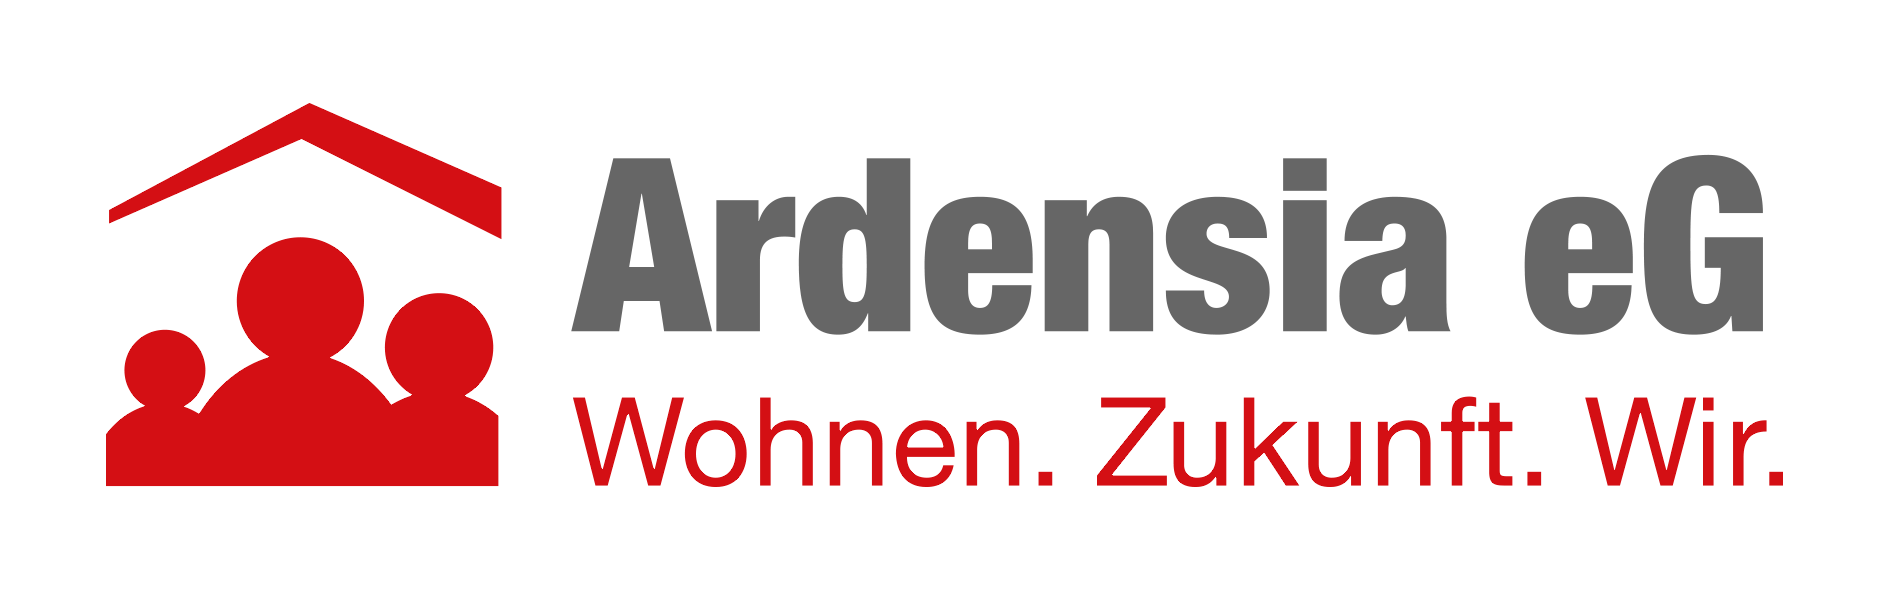 Logo_Ardensia_rz_rgb_backround_transparency